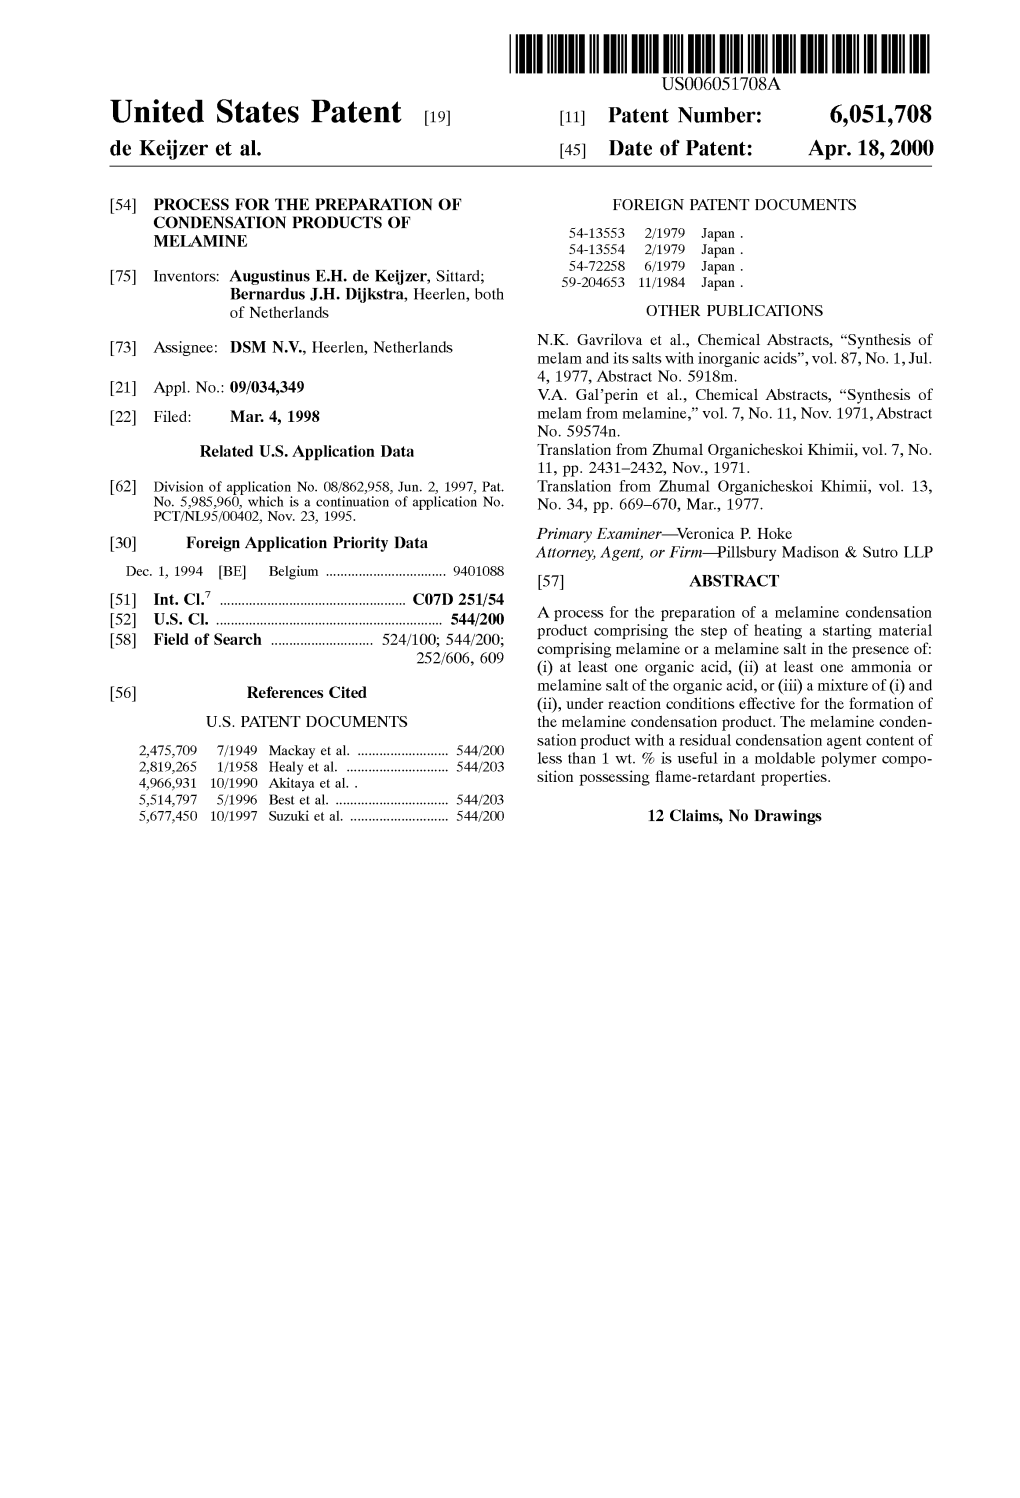 United States Patent (19) 11 Patent Number: 6,051,708 De Keijzer Et Al